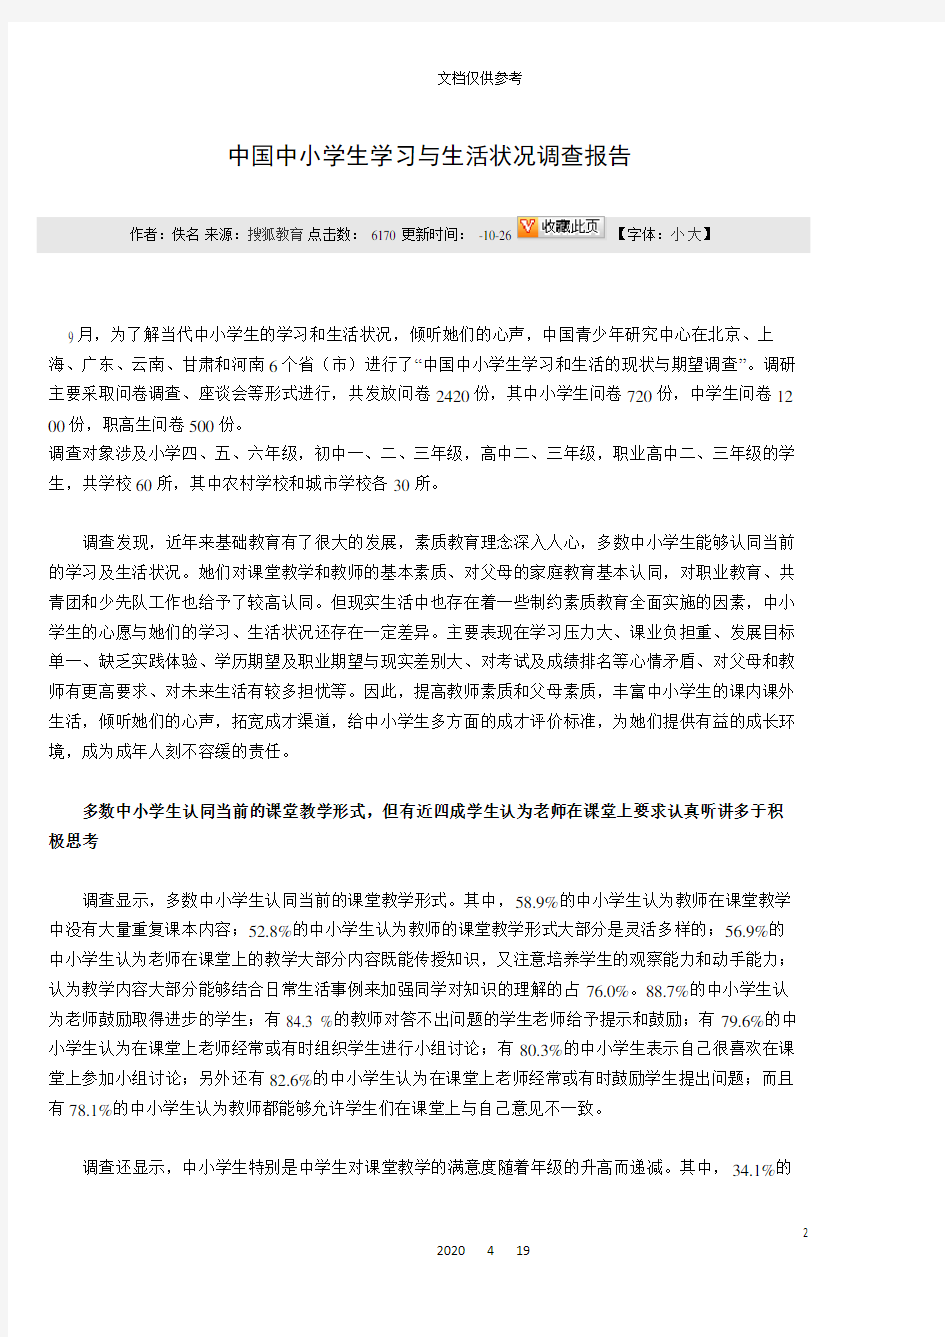 中国中小学生学习与生活状况调查报告